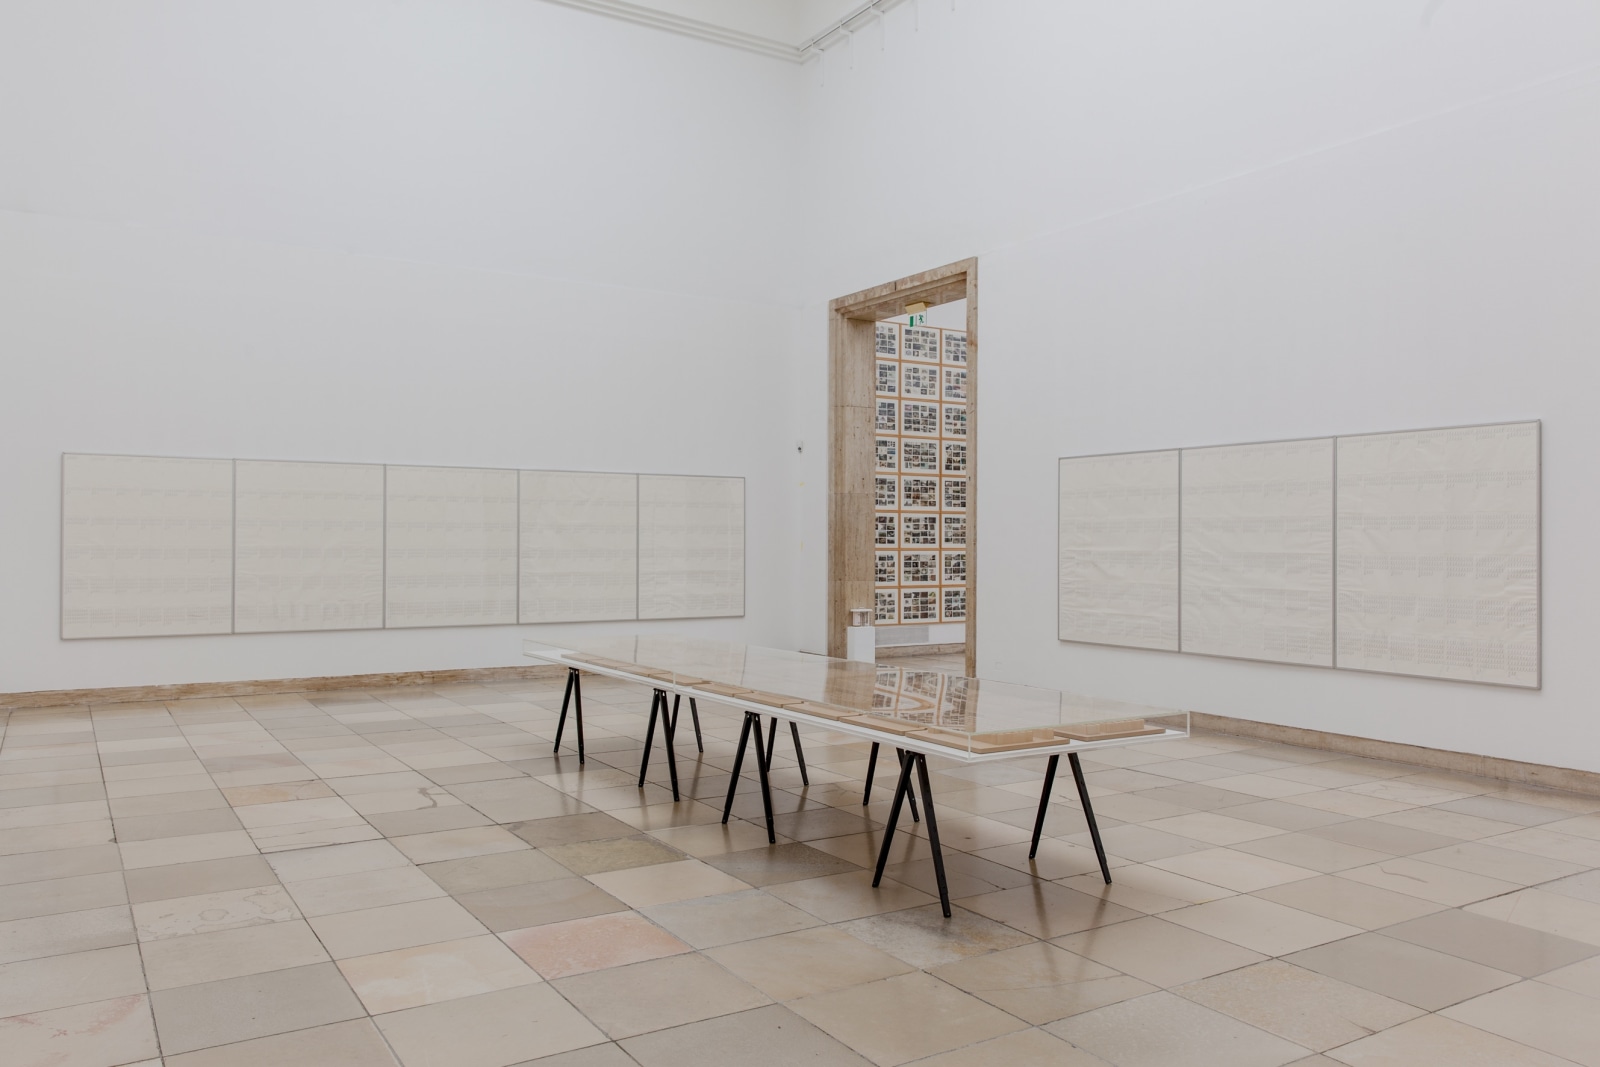 Hanne Darboven. Aufklärung (Enlightenment), Installation view, Haus der Kunst, Munich, 2015